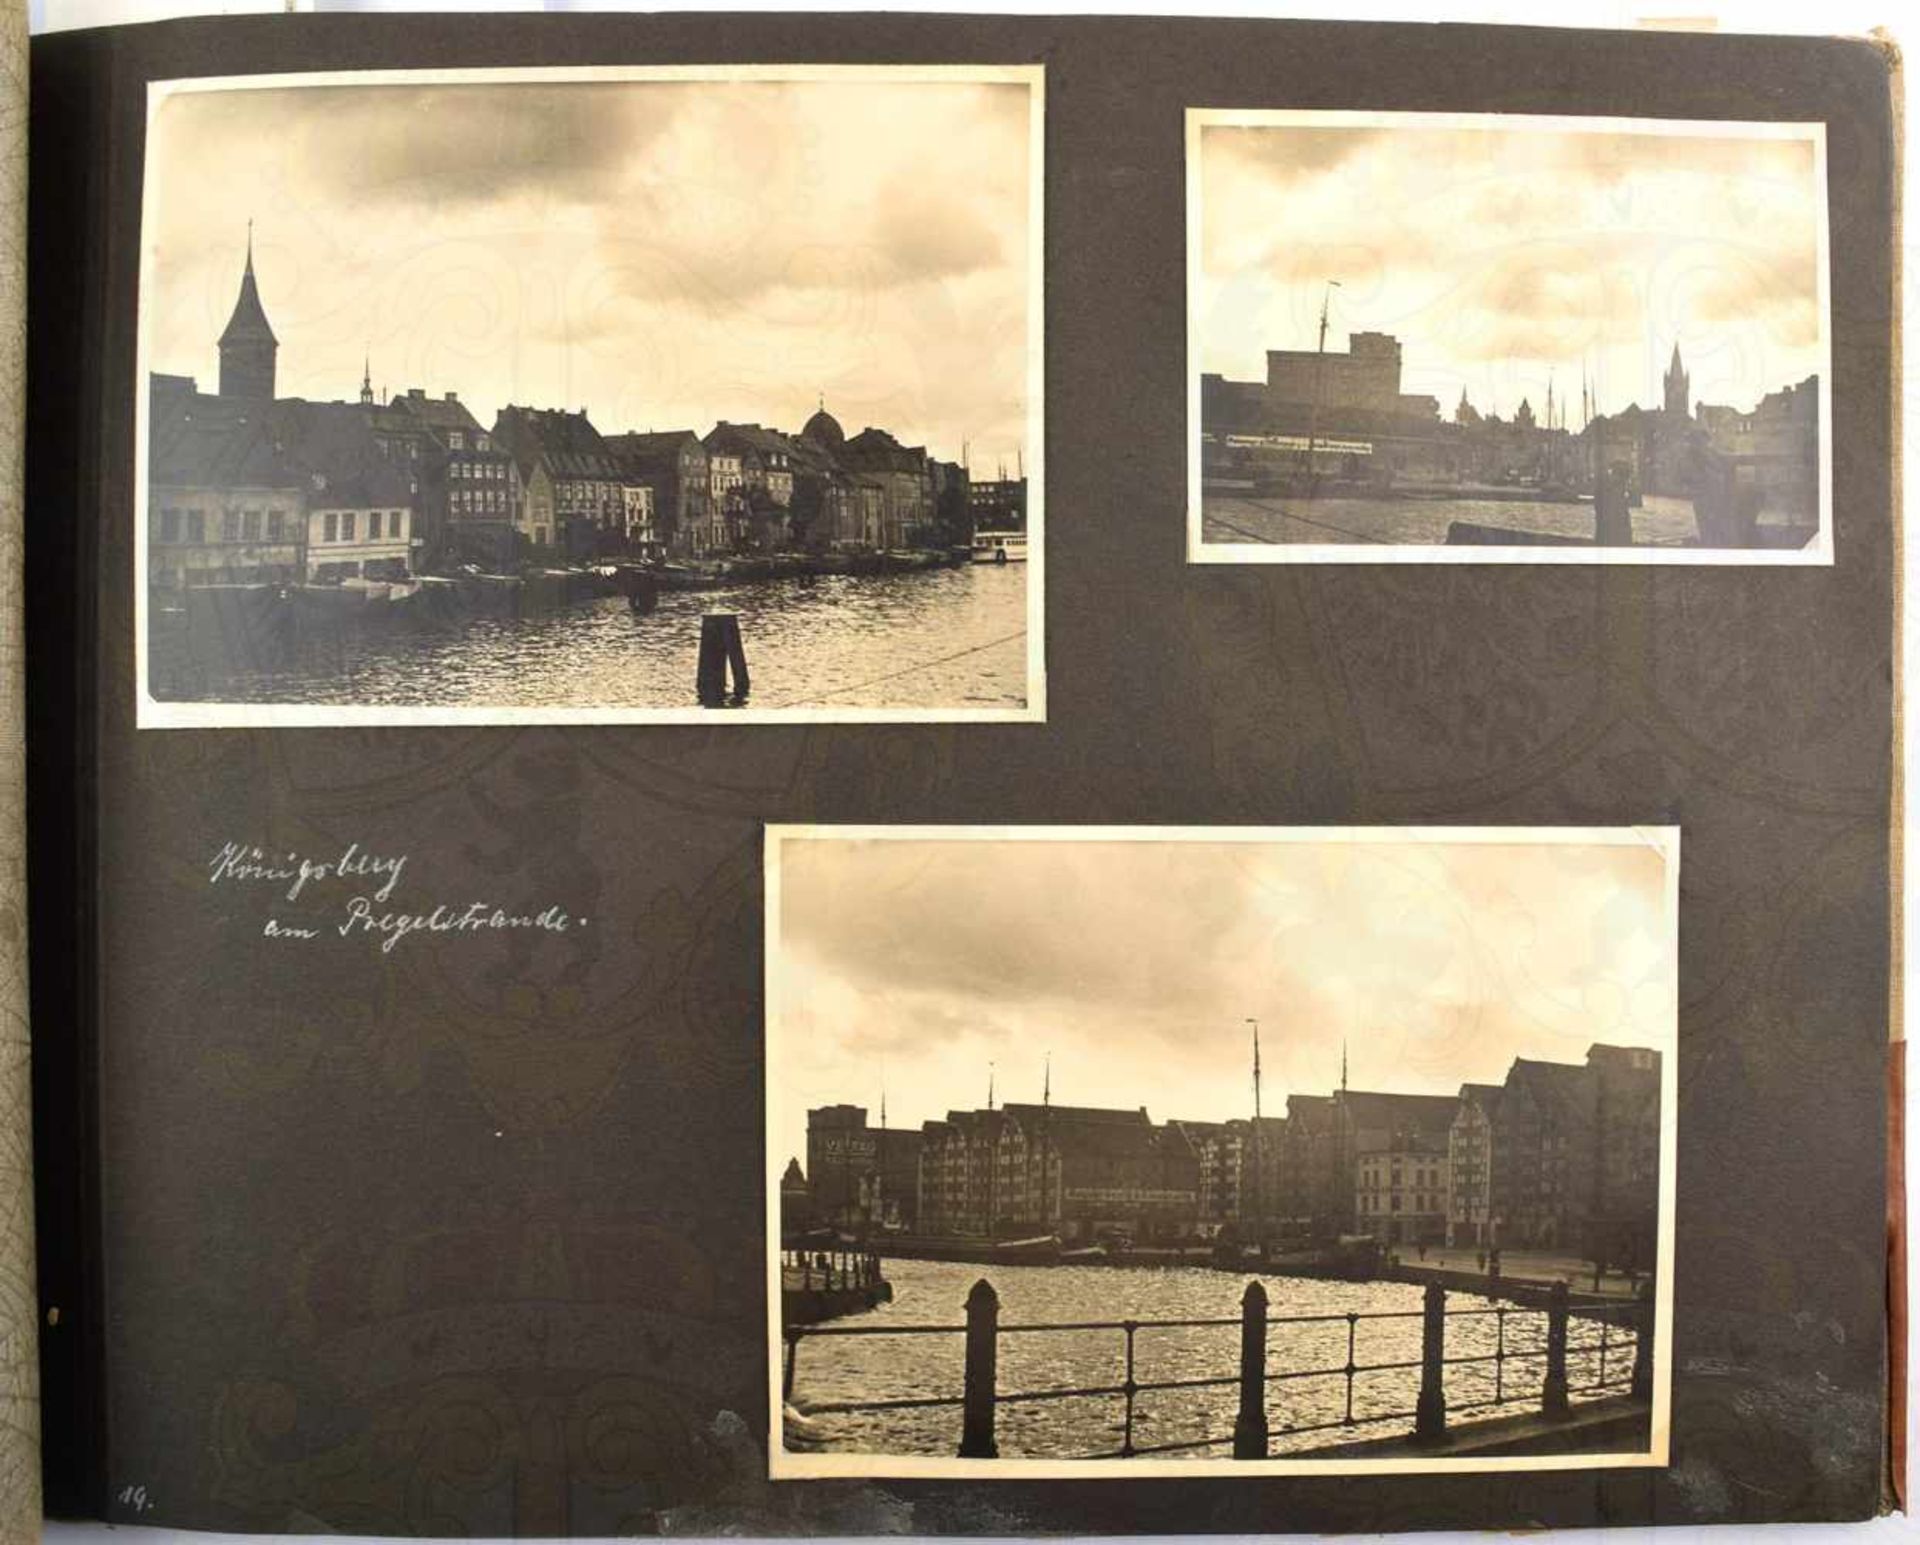 FOTOALBUM REISE DURCH DEUTSCHLAND, 1935, m. 160 Fotos, davon 60 Fotos Ostpreußen, Samland-Küste, - Bild 2 aus 5